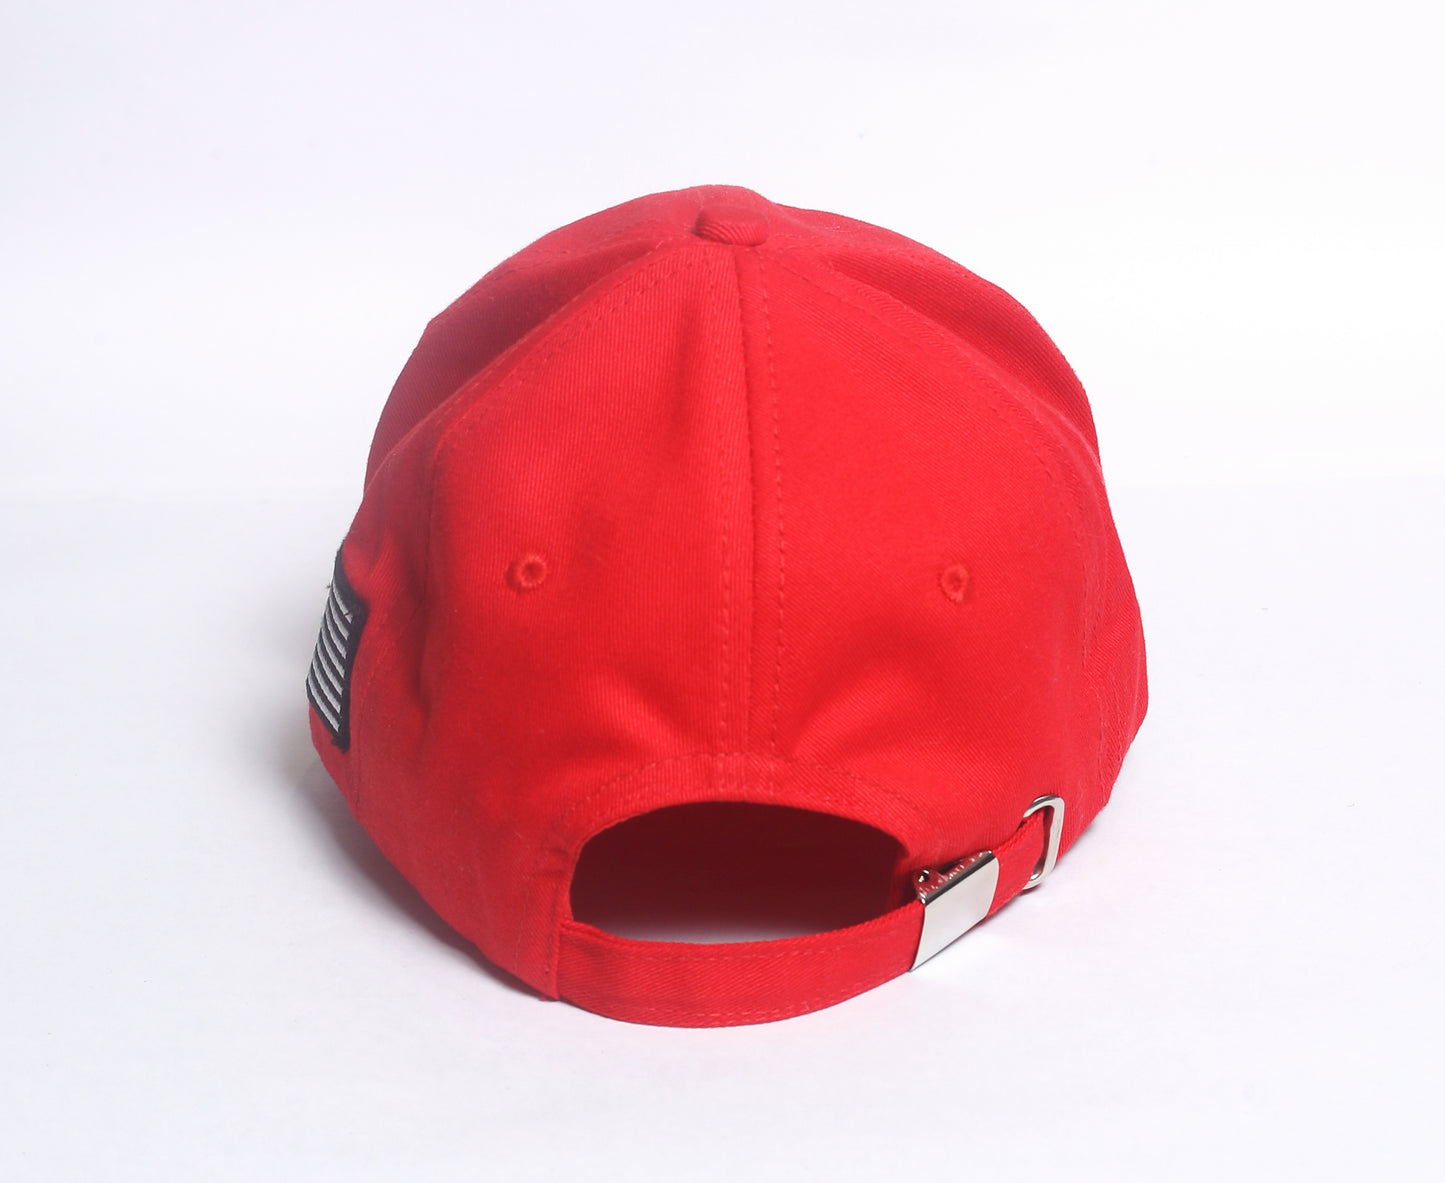 Joe & Hoe Gotta Go Authentic Cotton Red Hat